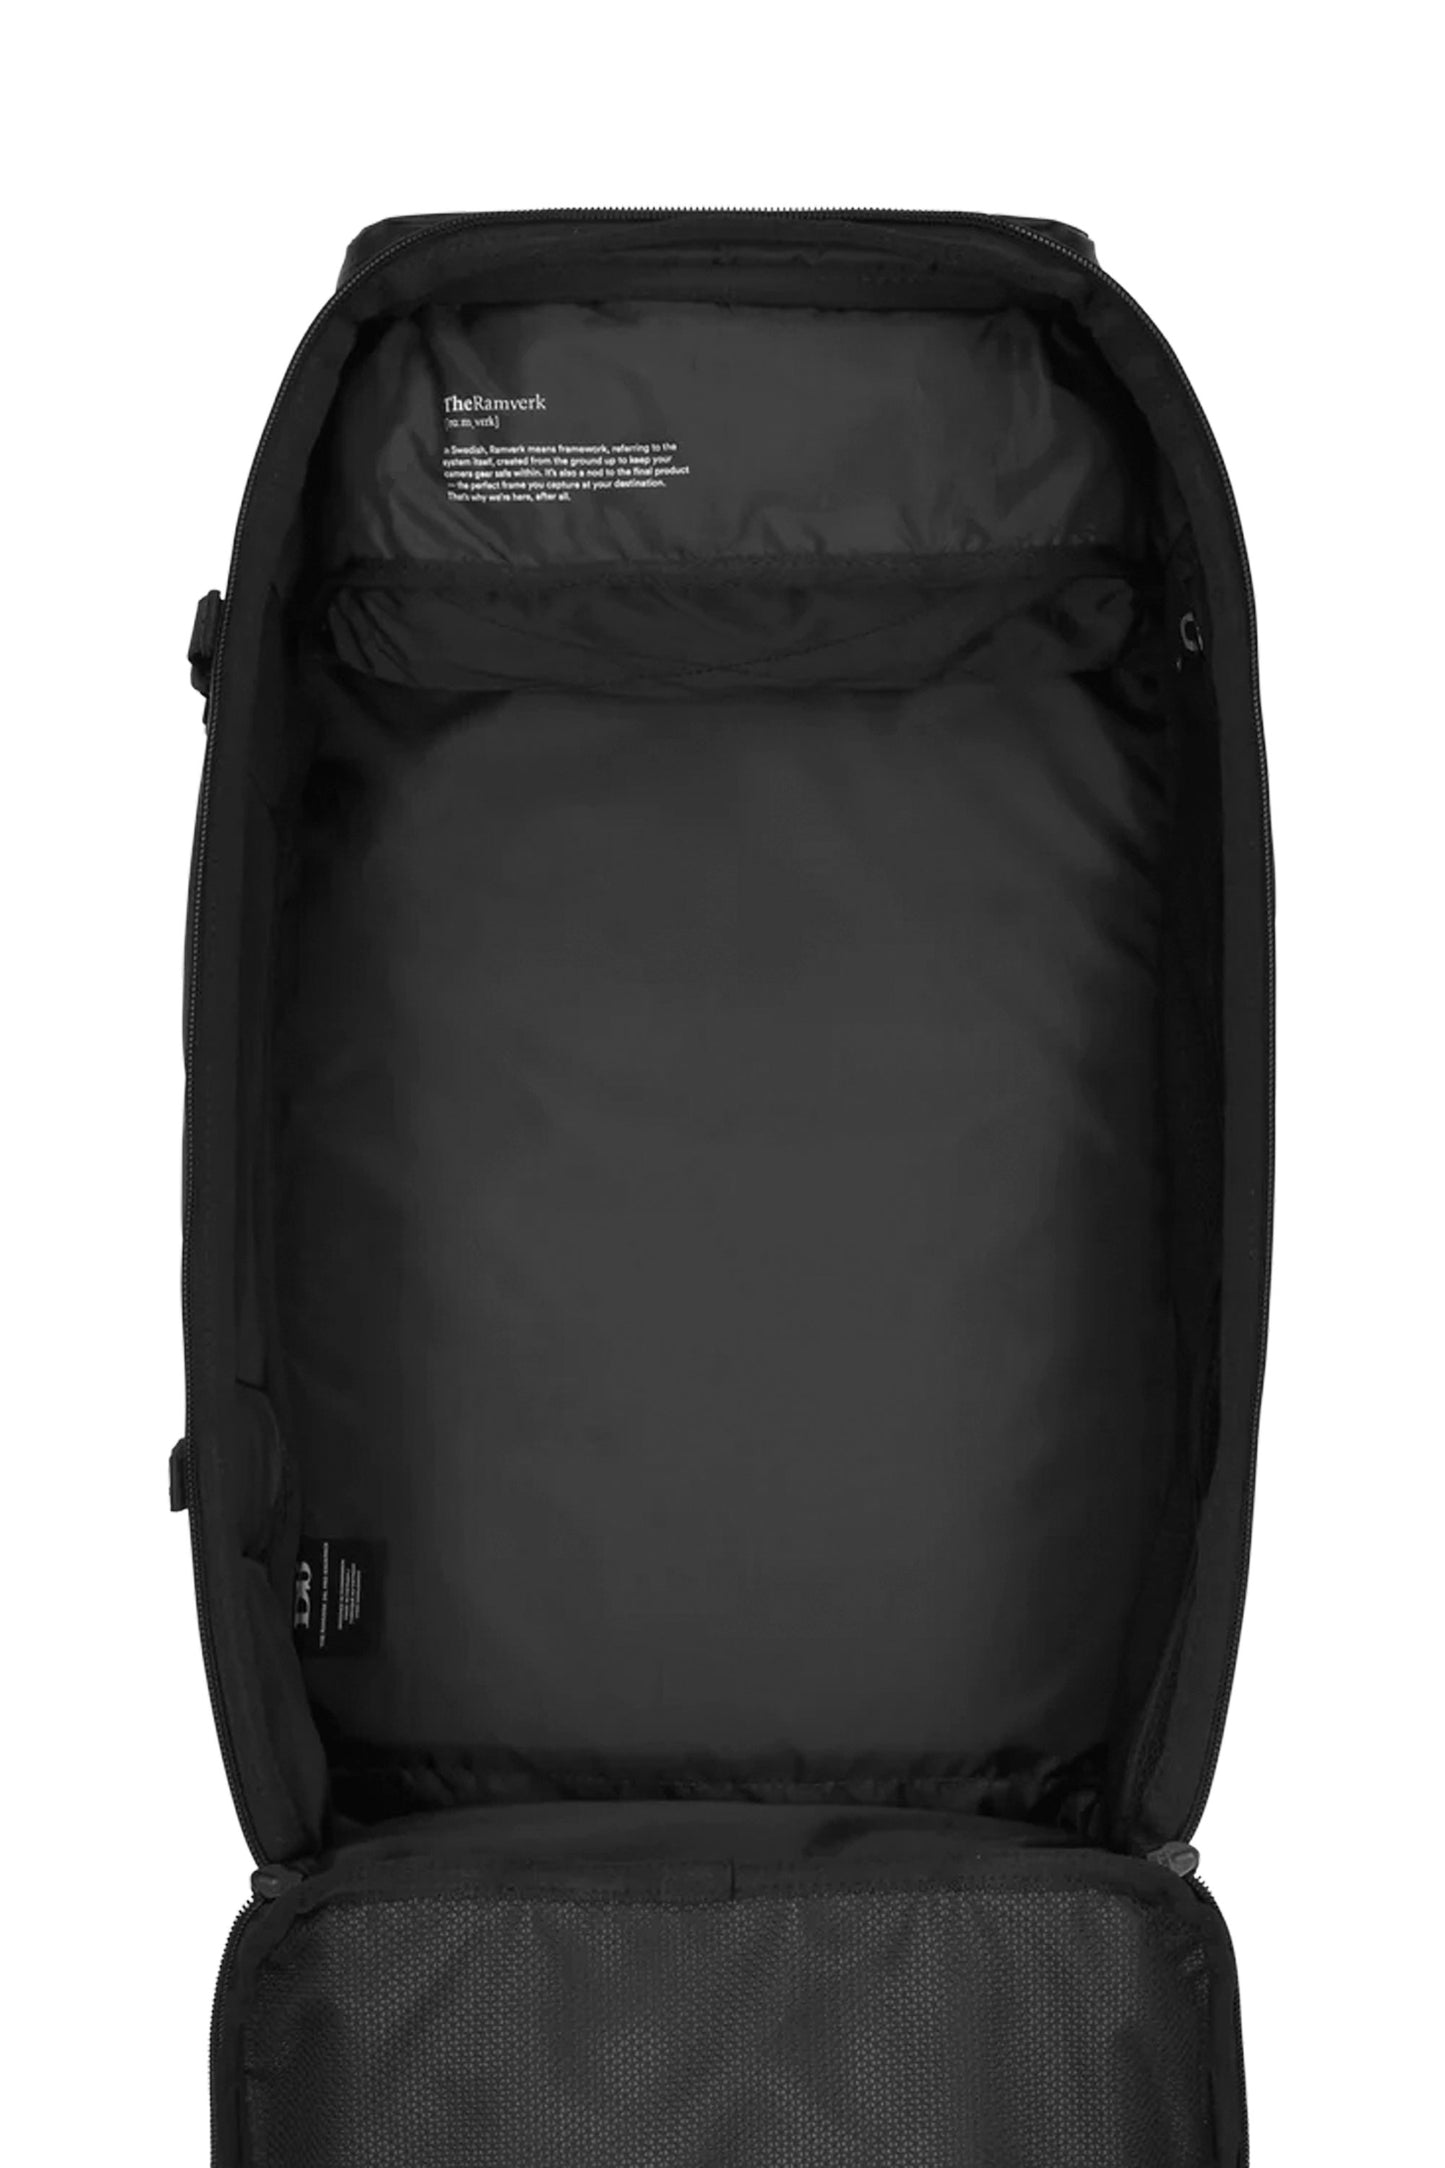 
                  
                    Pukas-Surf-Shop-Db-Journey-backpack-ramverk-pro-26l-black-out
                  
                